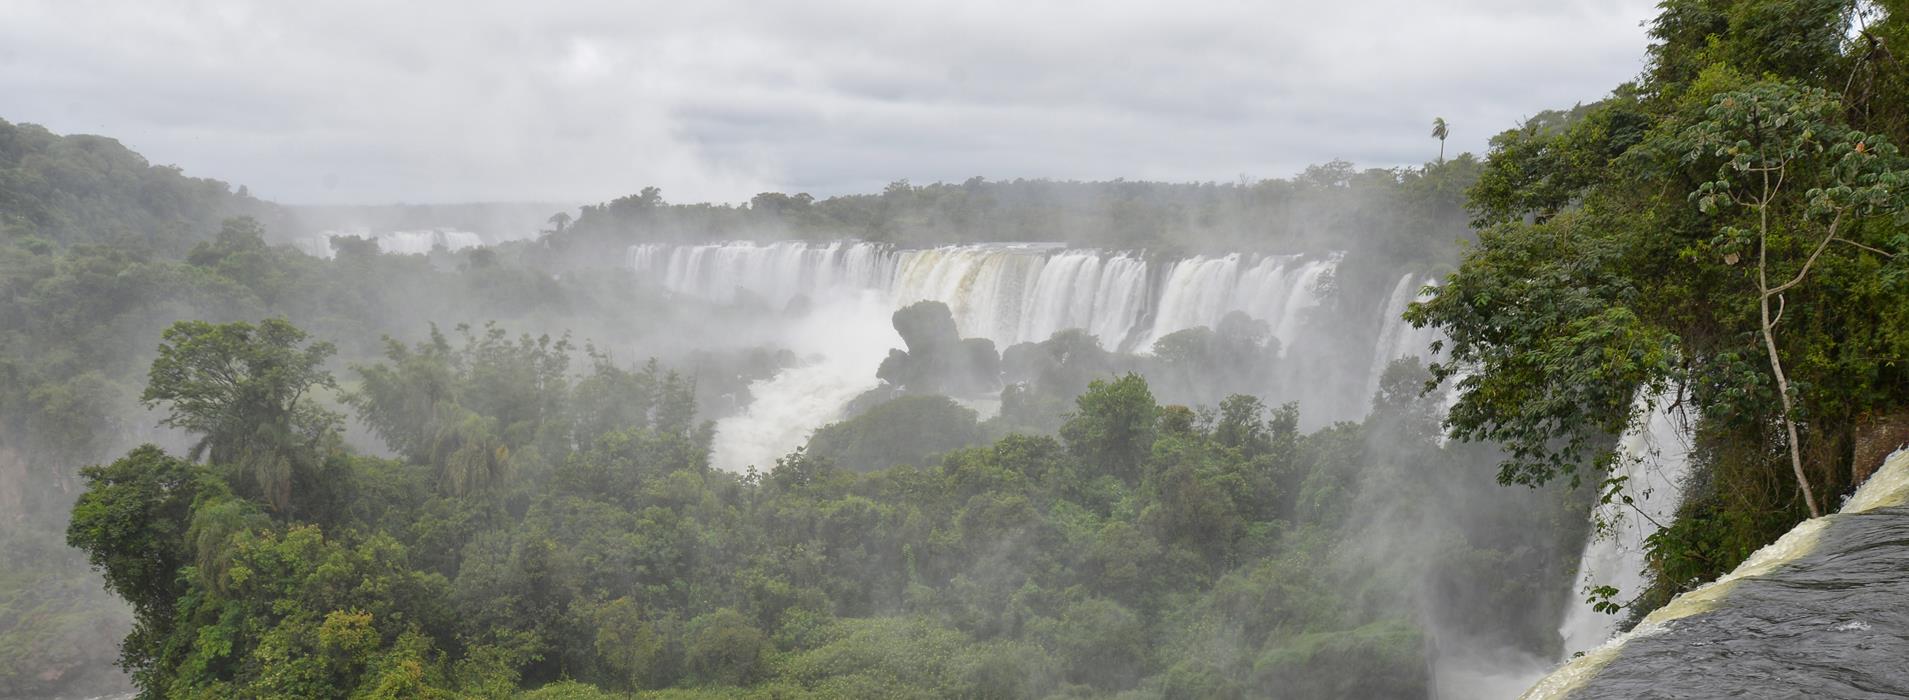 Фотокартина Панорама водопада Игуасу